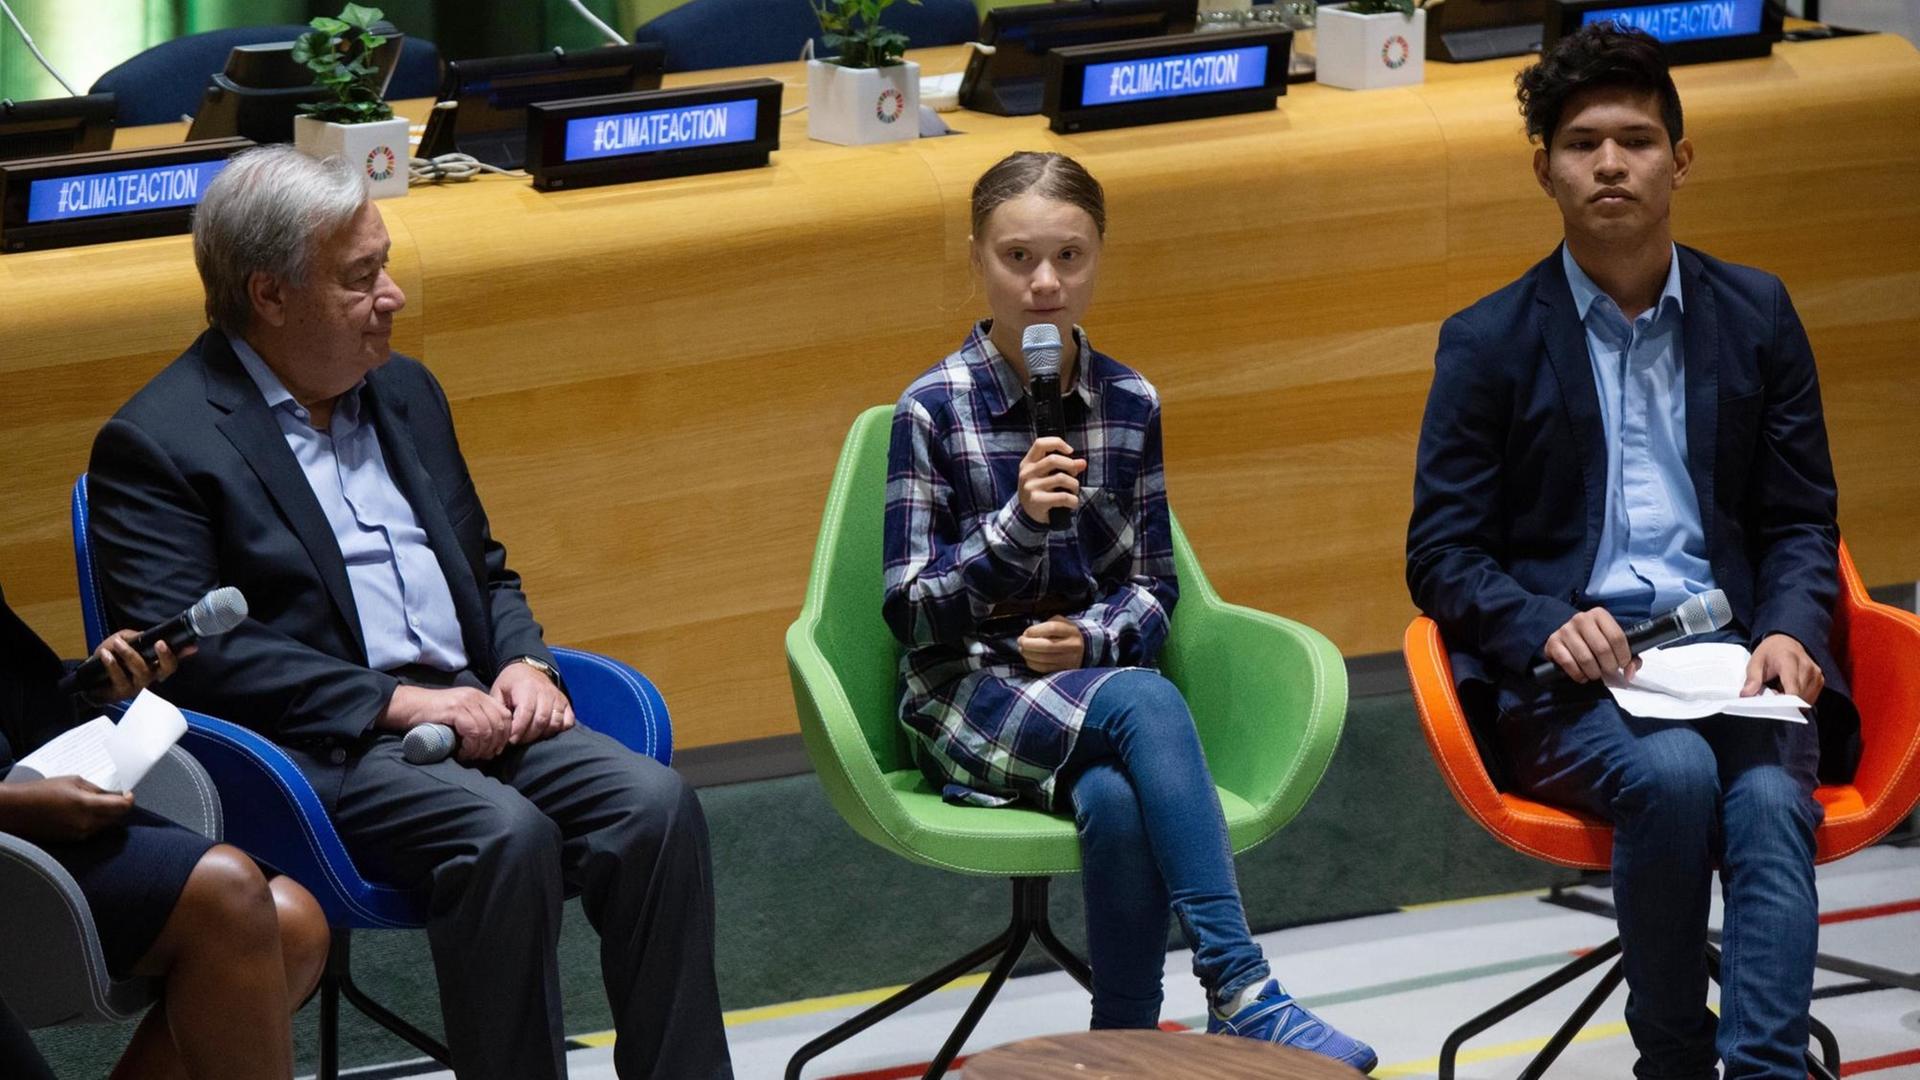 Greta Thunberg, in der Mitte, links neben ihr UNO-Generalsekretär Antonio Guterres, während des UNO-Jugend-Klimagipfels in New York